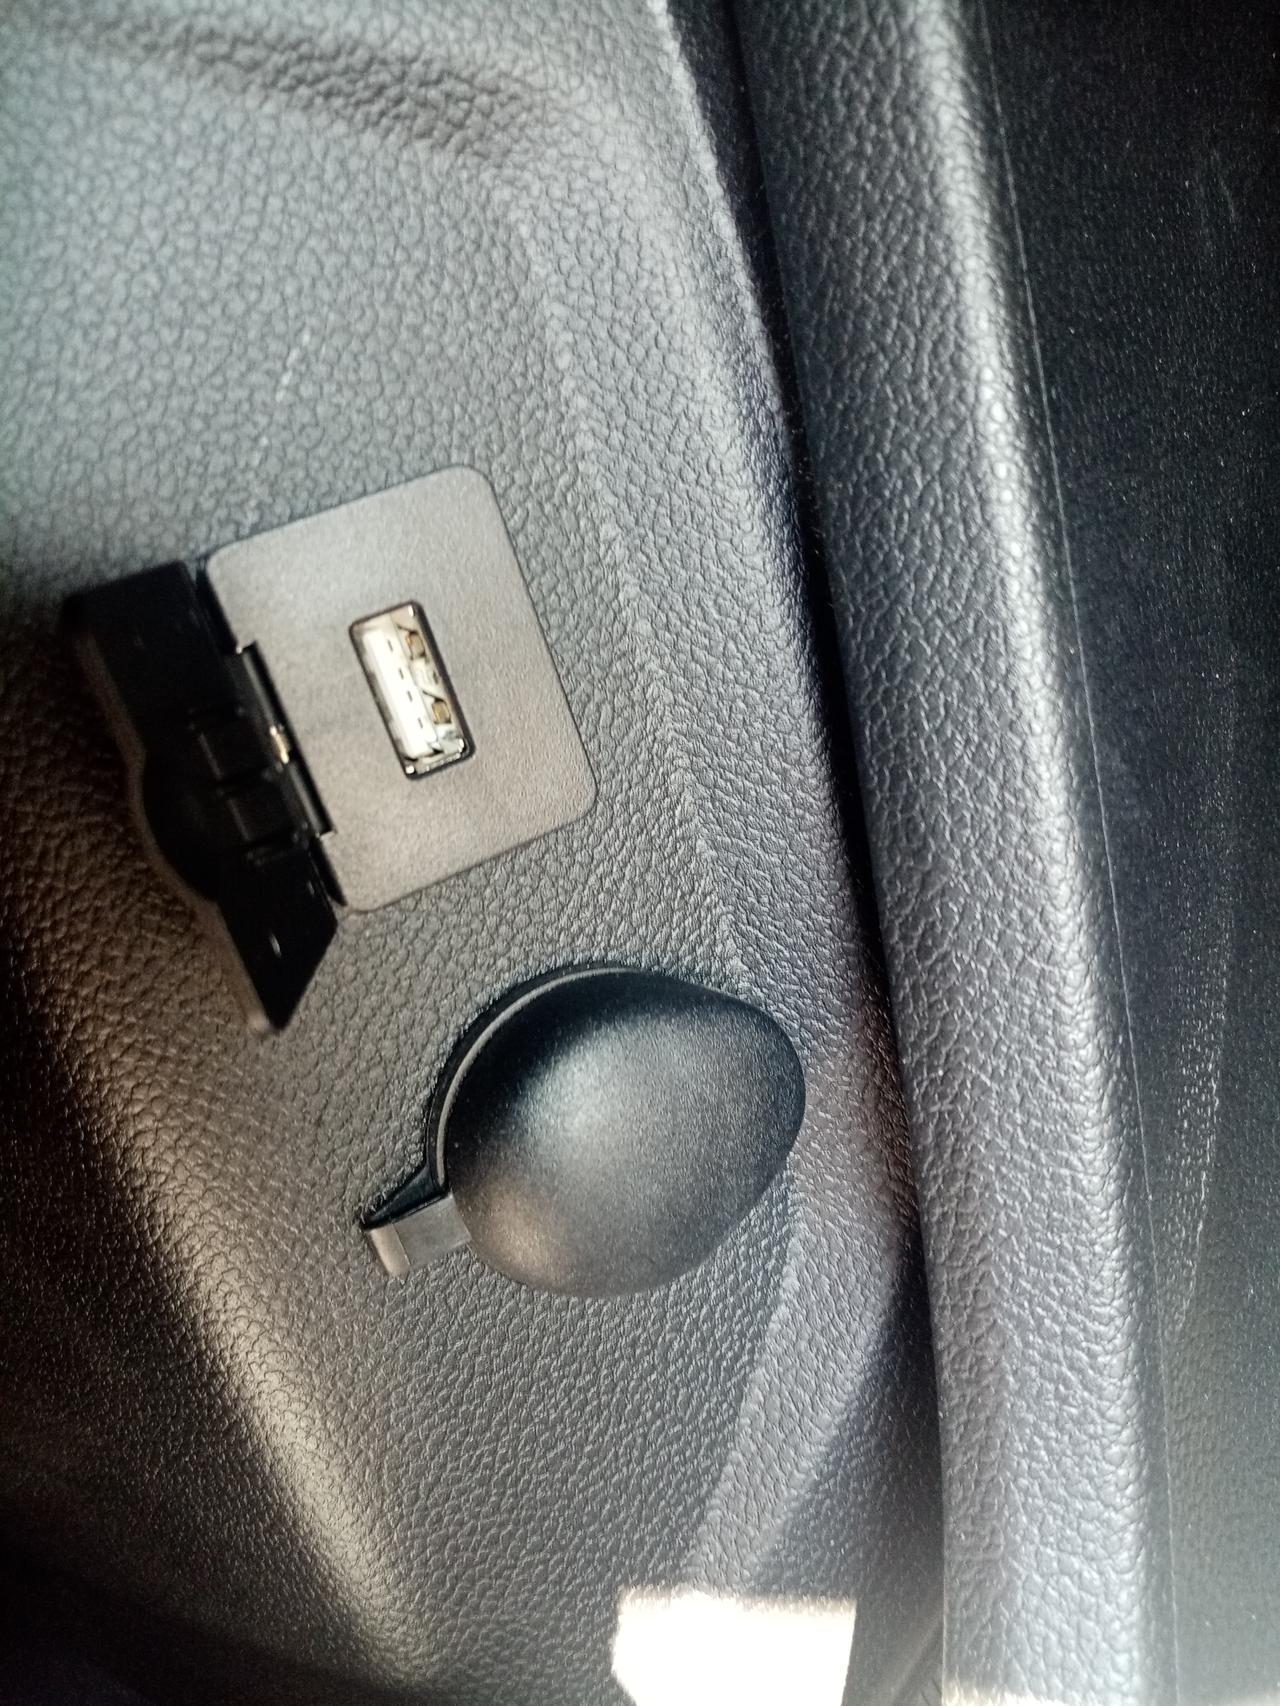 哈弗H6 各位大佬苹果carplay，怎么数据线插口不一样呢，车上的是安卓插口，我这苹果插口太小了。怎么弄